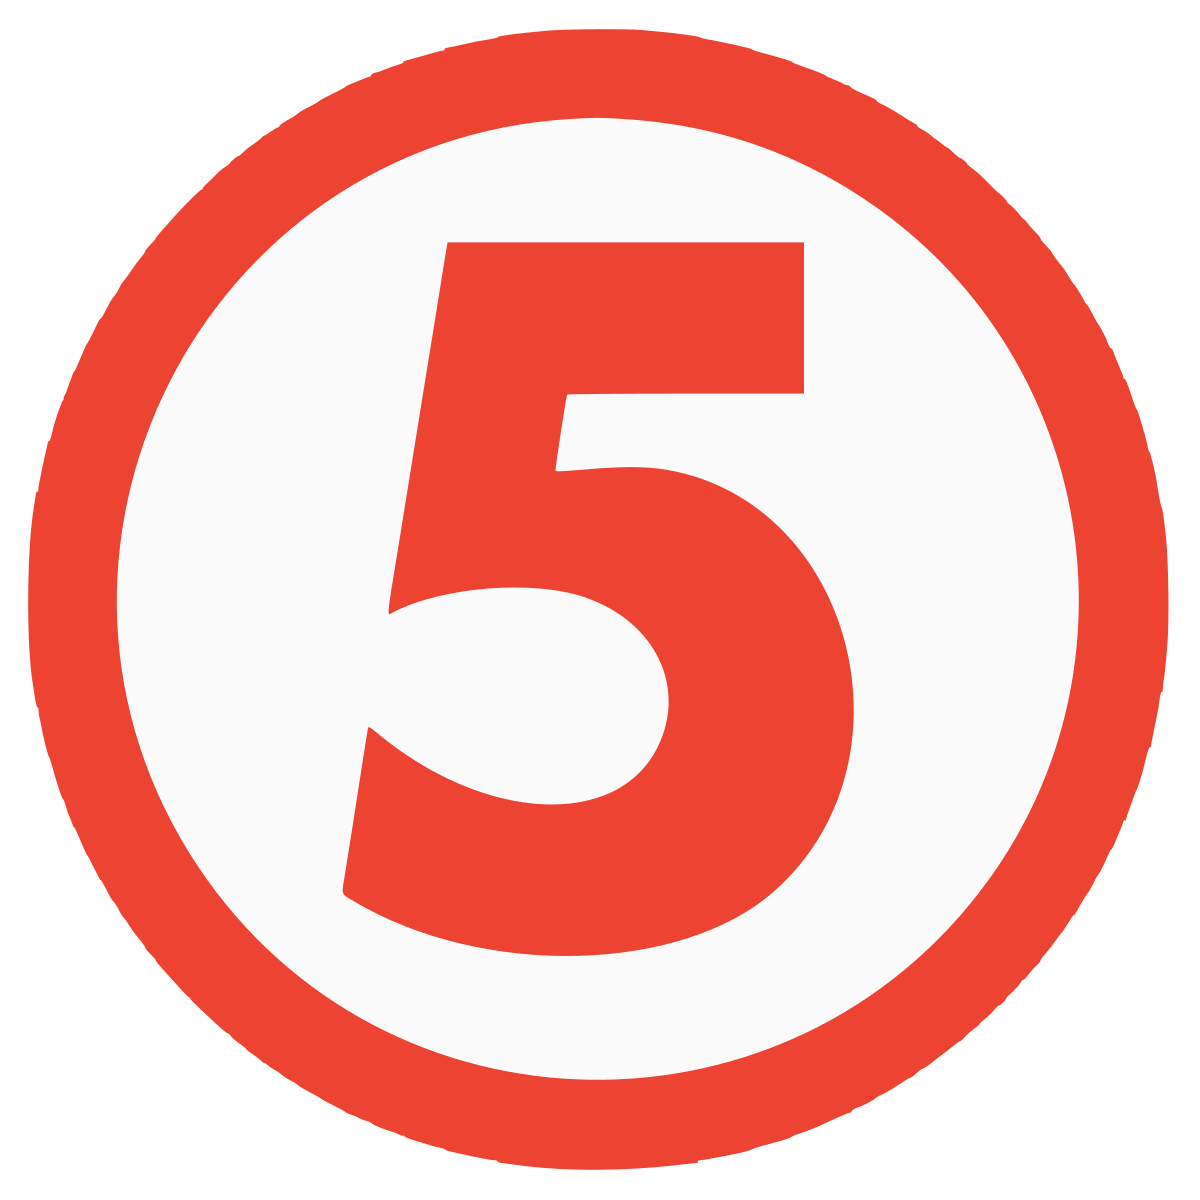 Channel 5 Logo - 5 (TV channel)